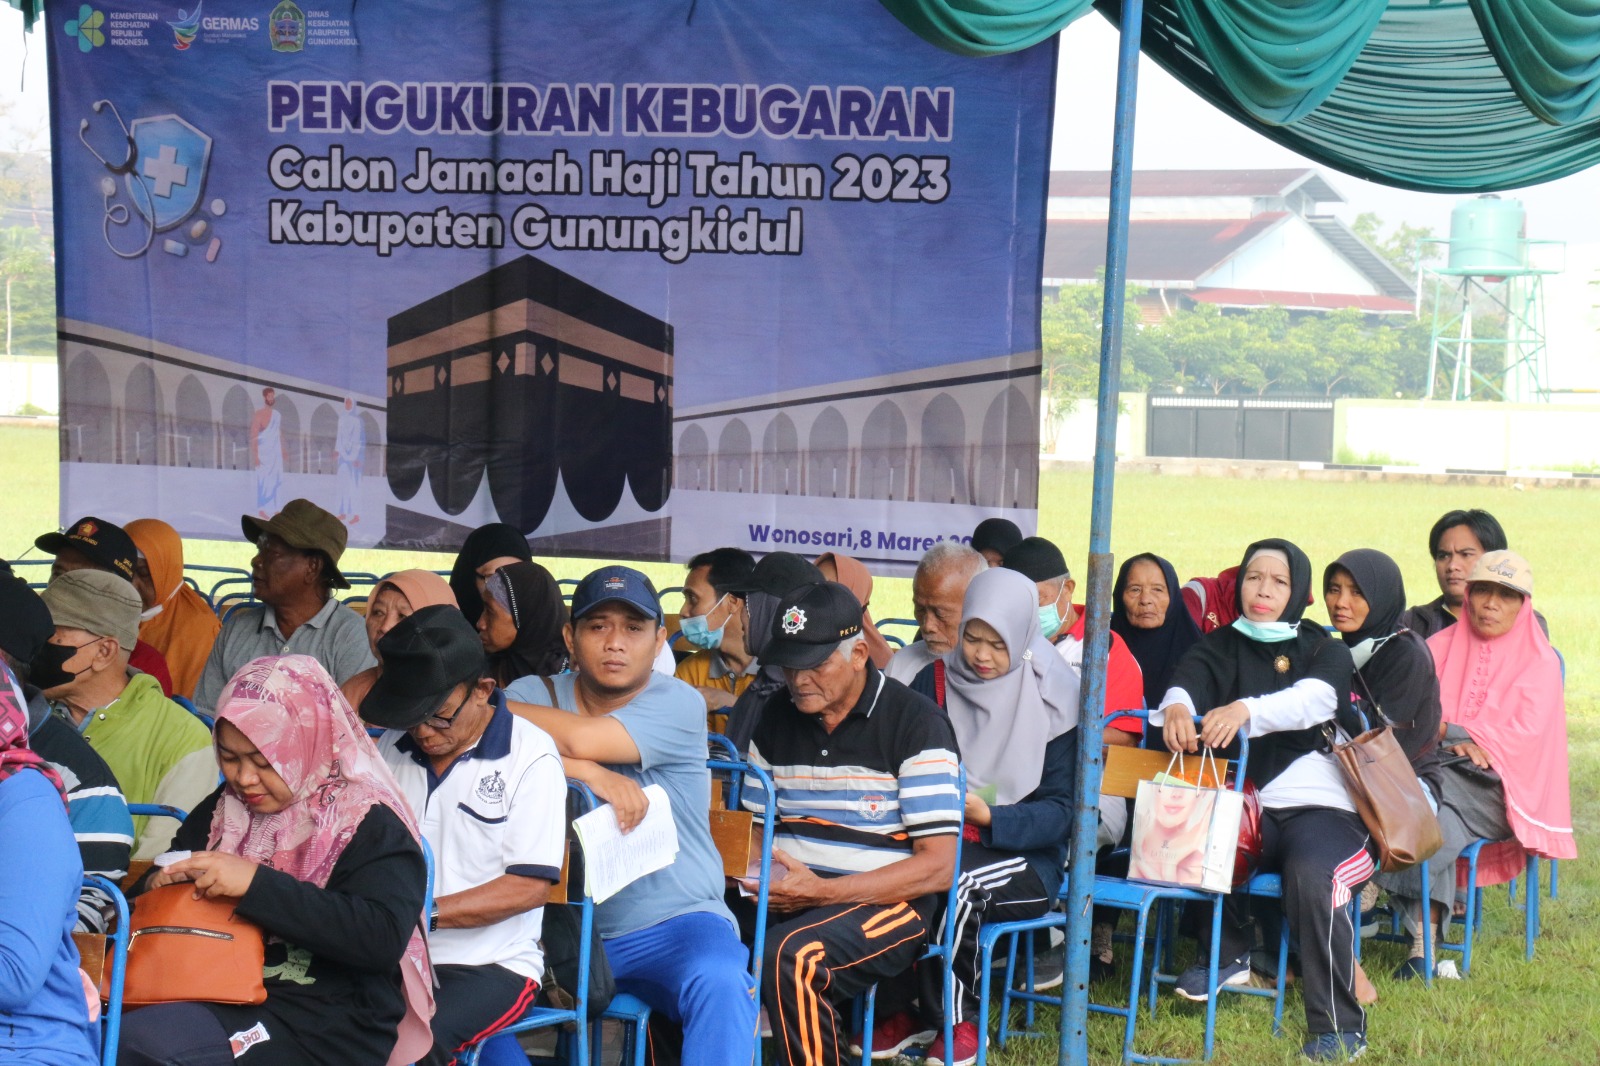 Jemaah Haji Gunungkidul Keberangkatan 2023 Ikuti Pengukuran Kebugaran